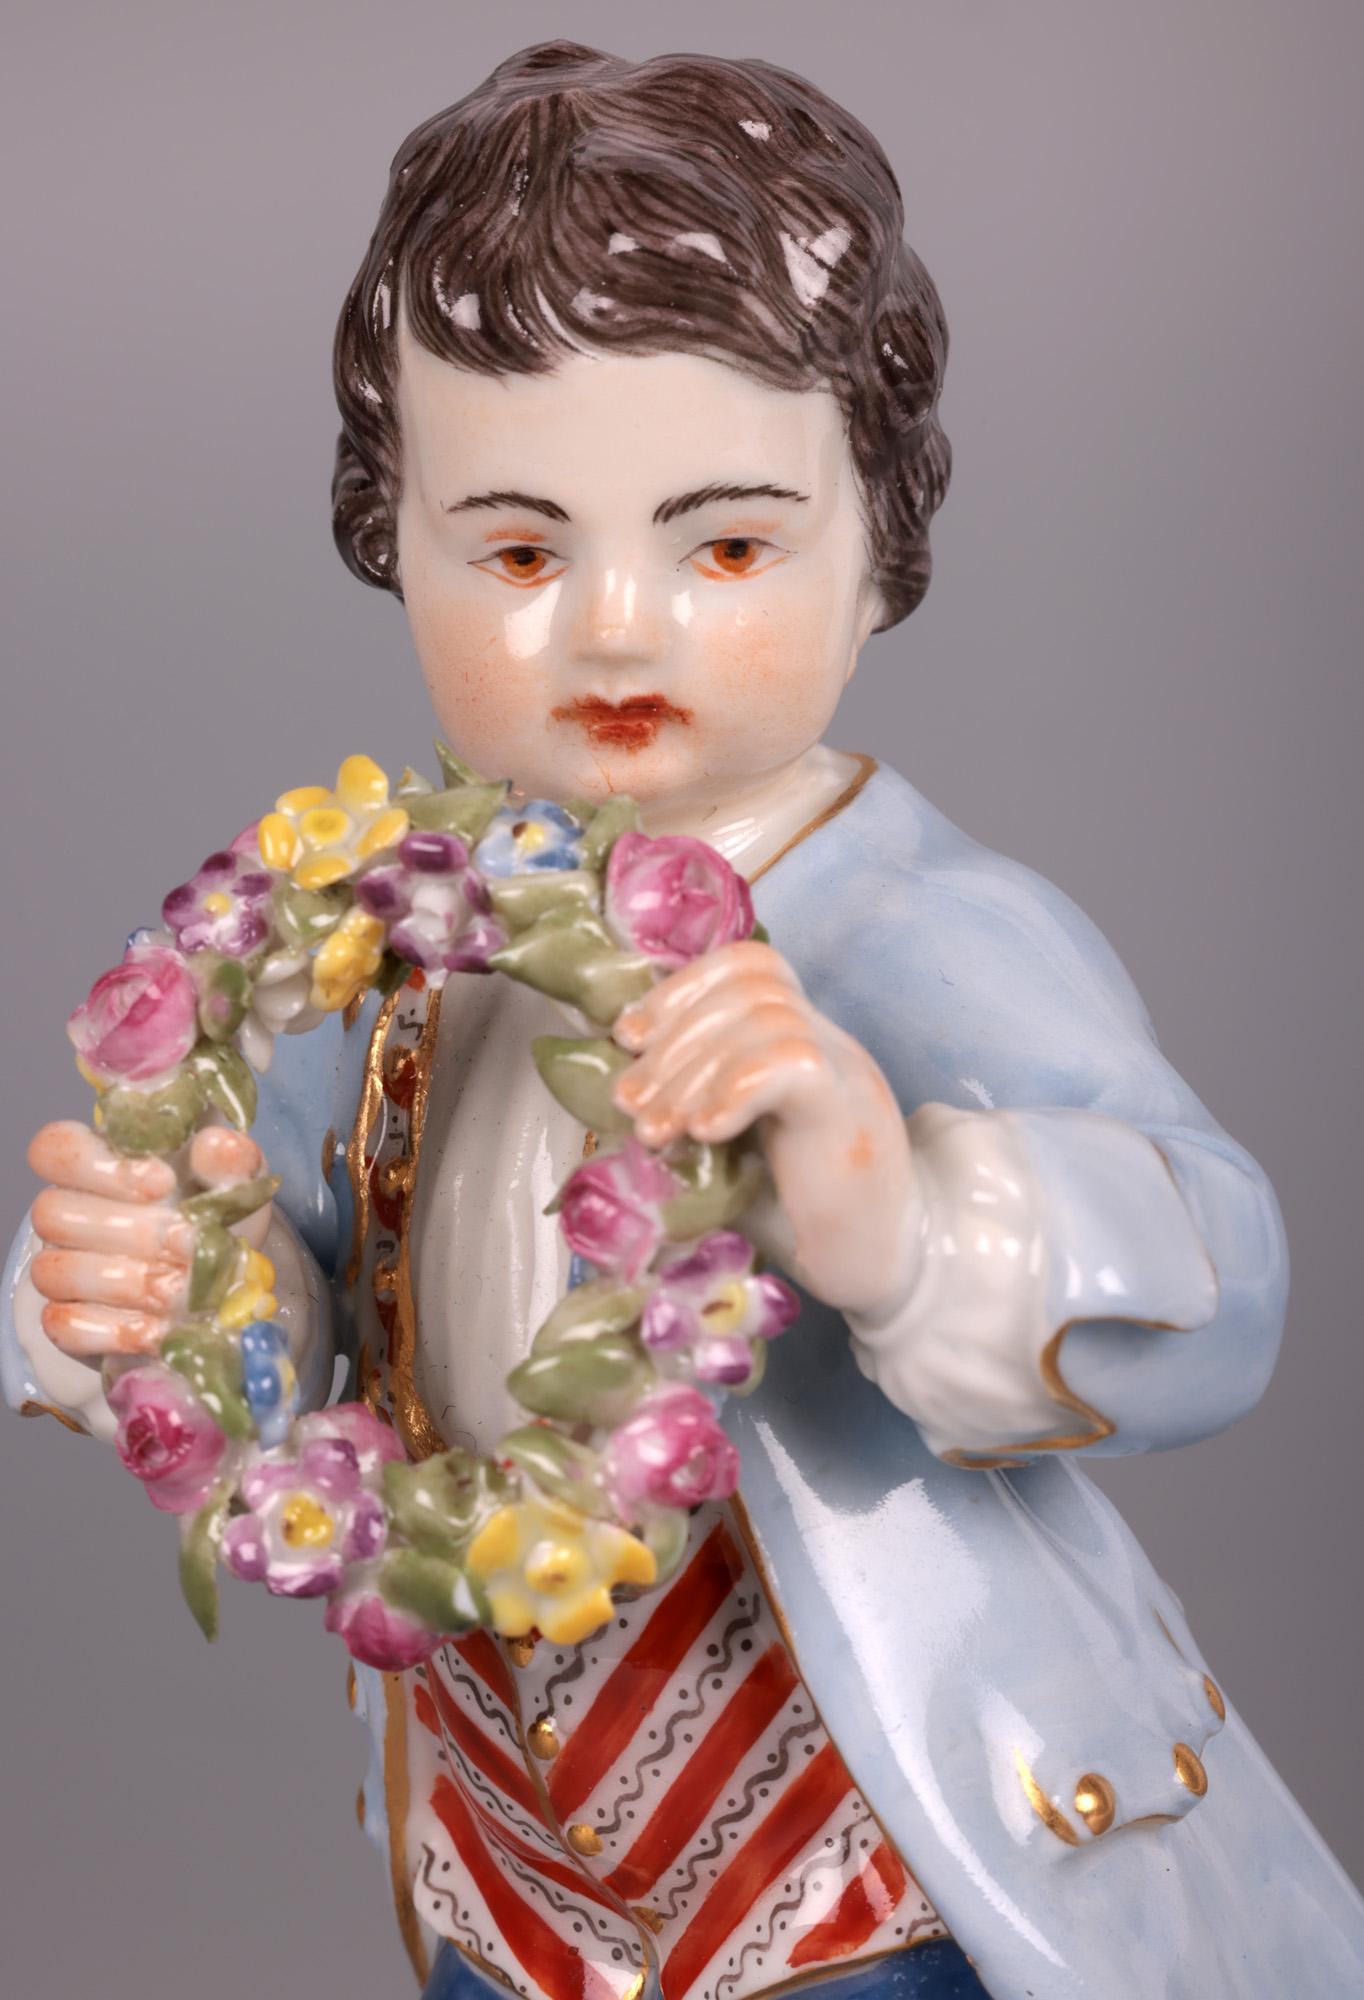 Paire de figurines en porcelaine allemande vintage tenant des fleurs, fabriquées par le célèbre fabricant Meissen et datant vraisemblablement du début du 20e siècle. Cette paire de figurines finement réalisées est typique du style de Meissen et